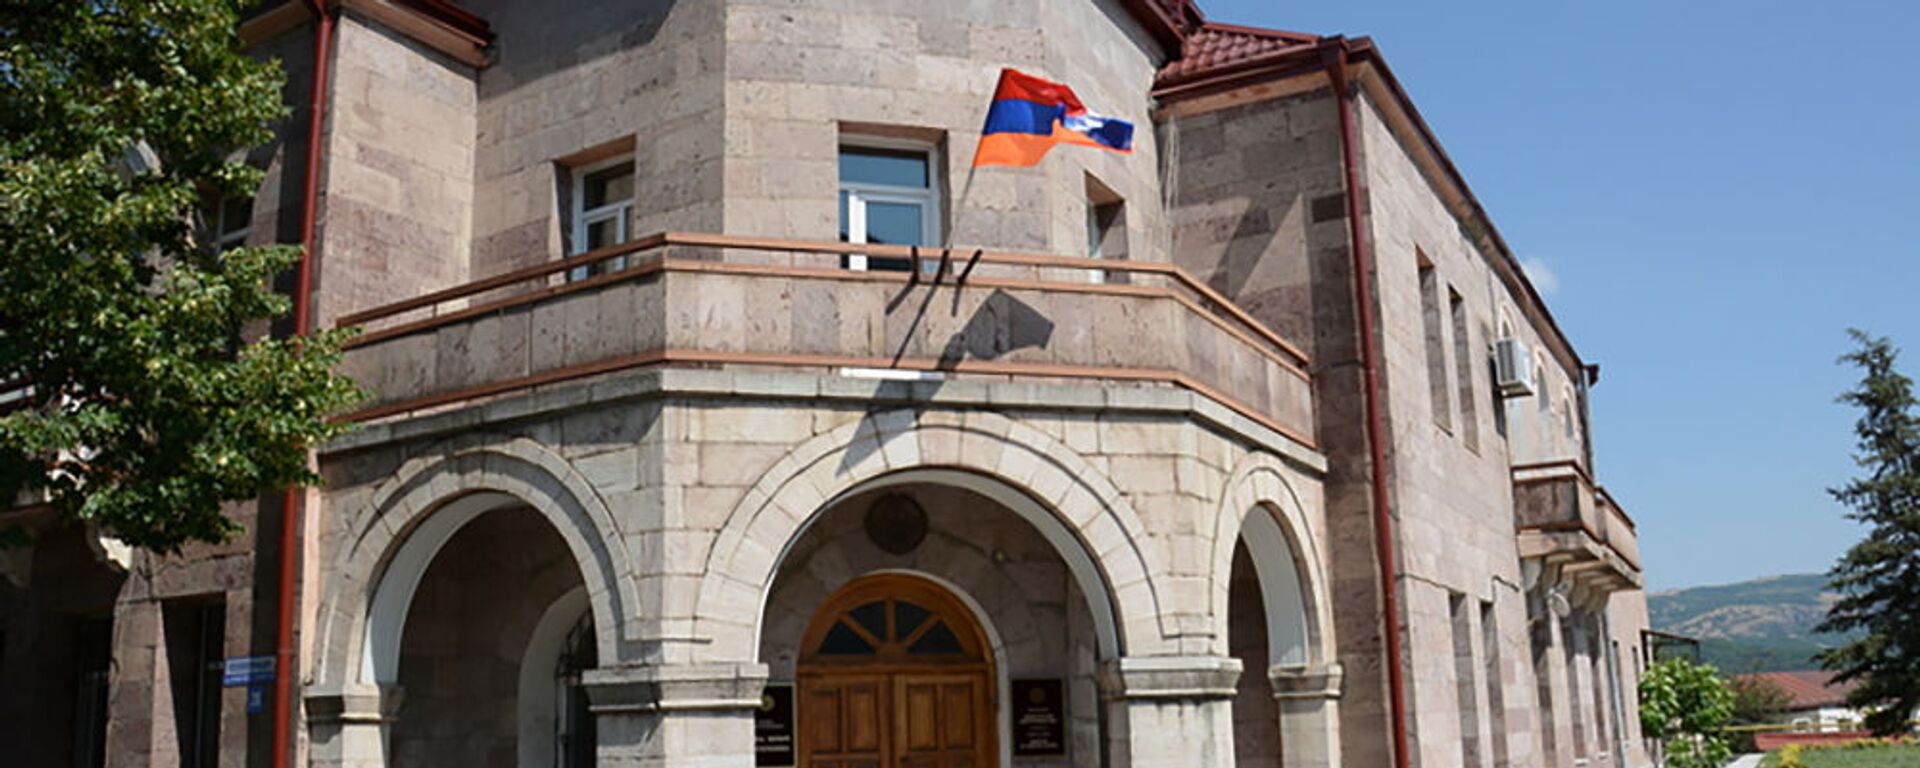 Здание Министерства иностранных дел Карабаха - Sputnik Արմենիա, 1920, 25.04.2021